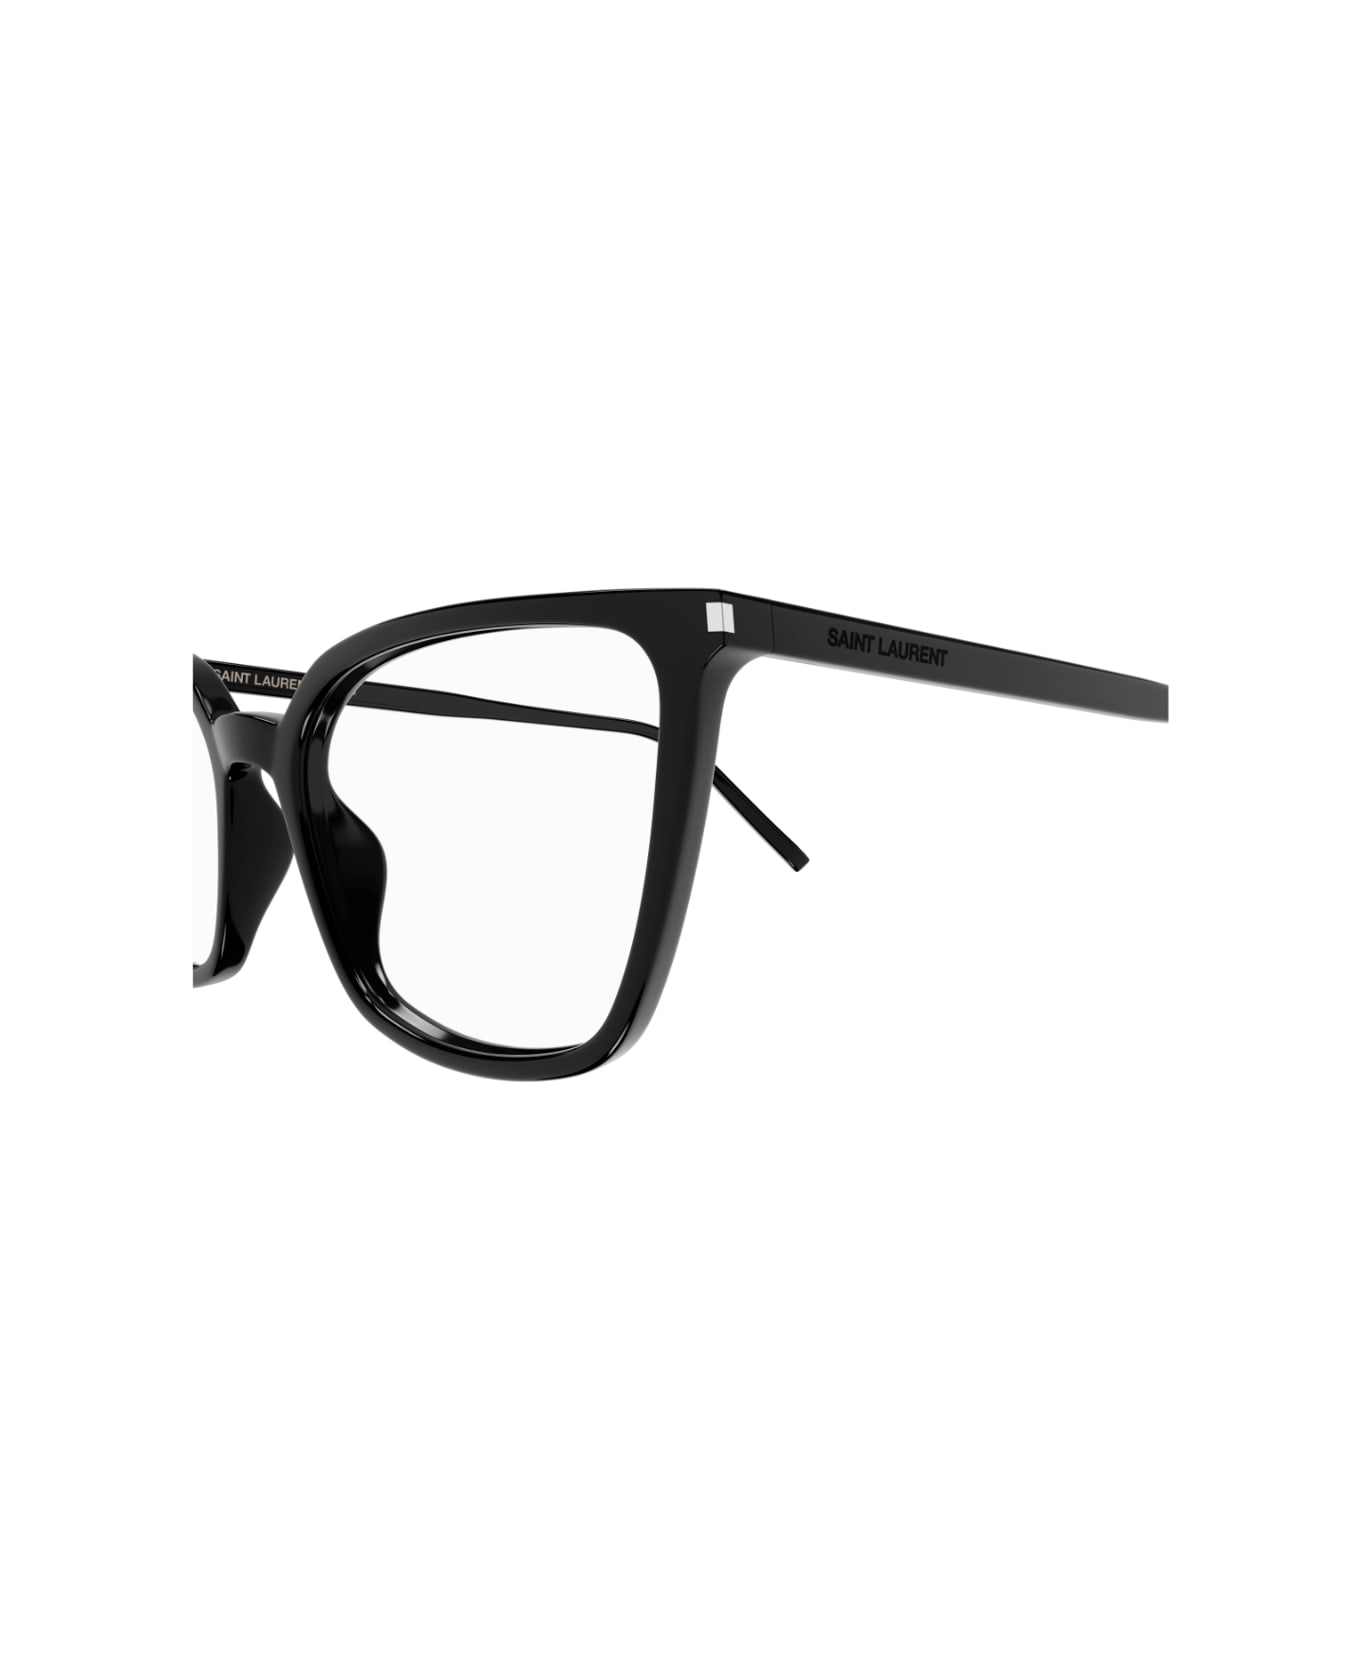 Saint Laurent Eyewear sl 669 002 Glasses アイウェア